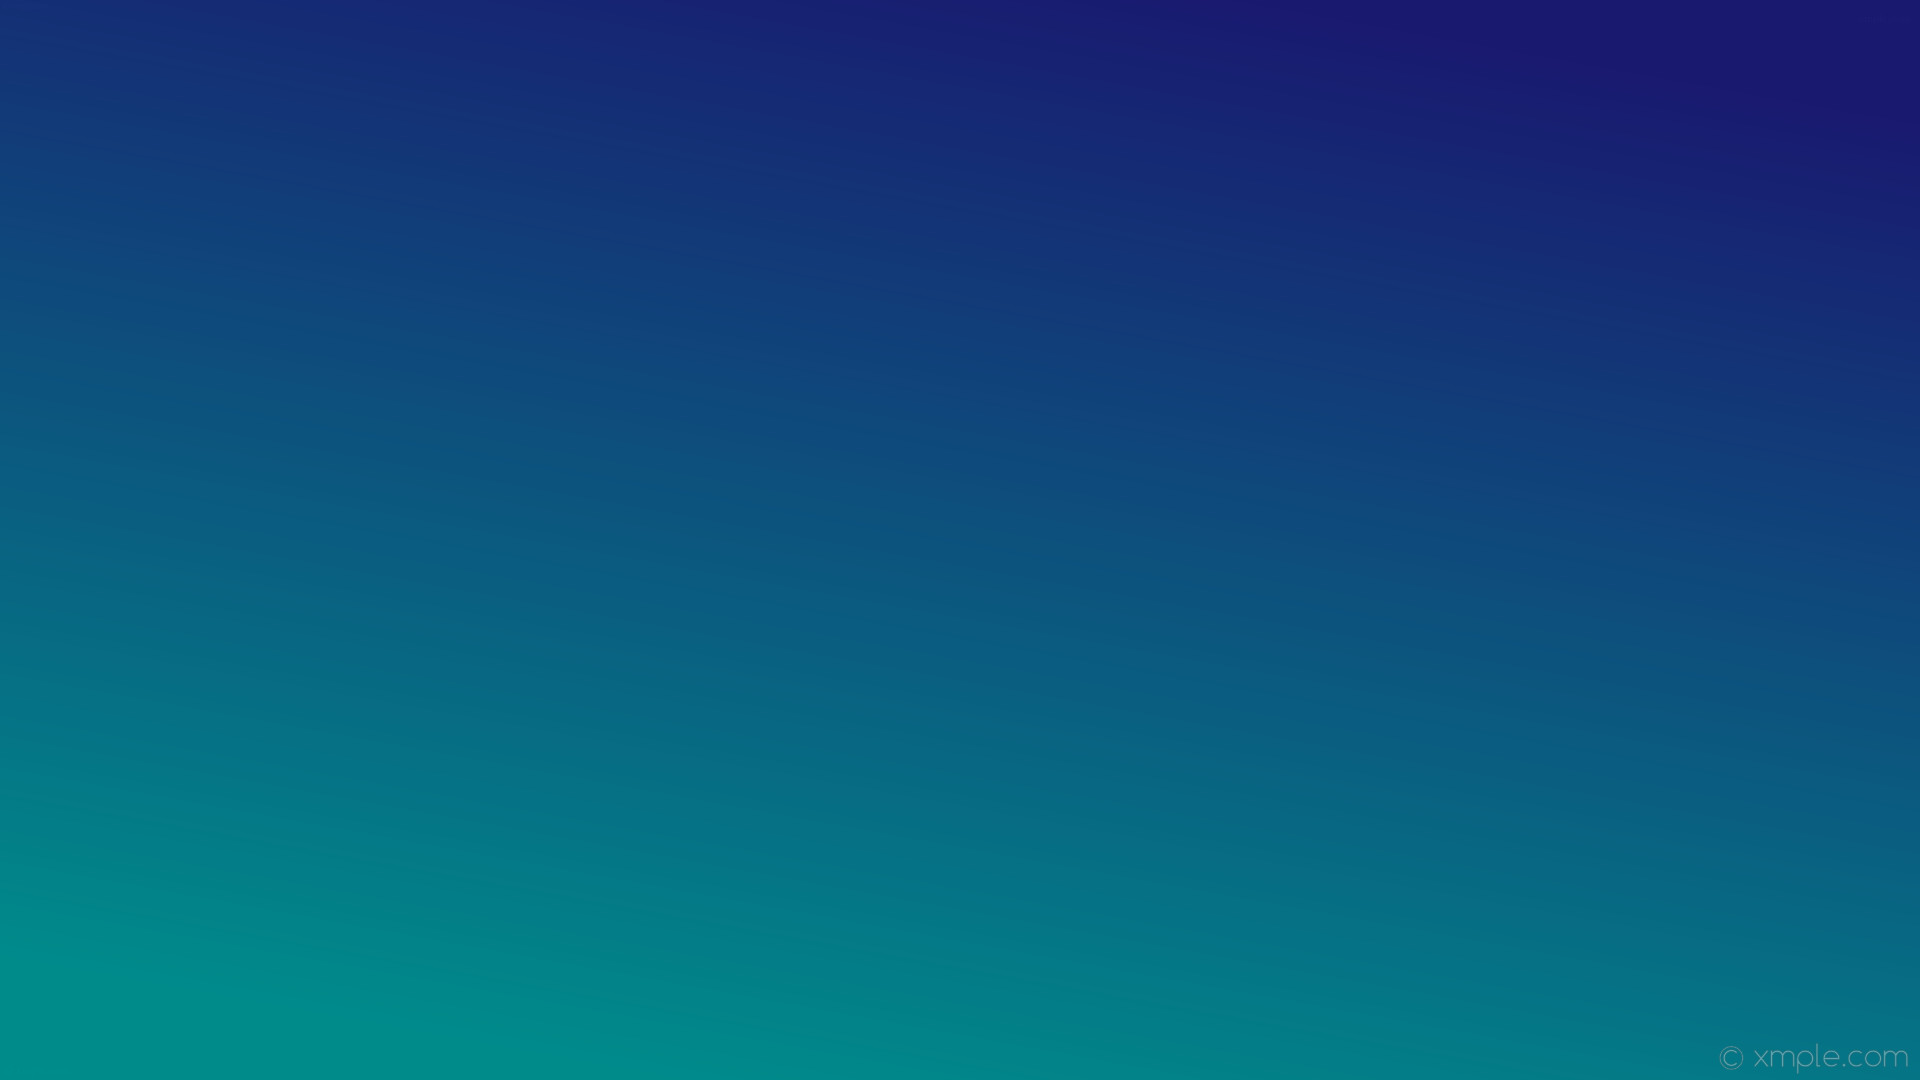 1920x1080 wallpaper gradient blue green linear dark cyan midnight blue #008b8b  #191970 240Â°